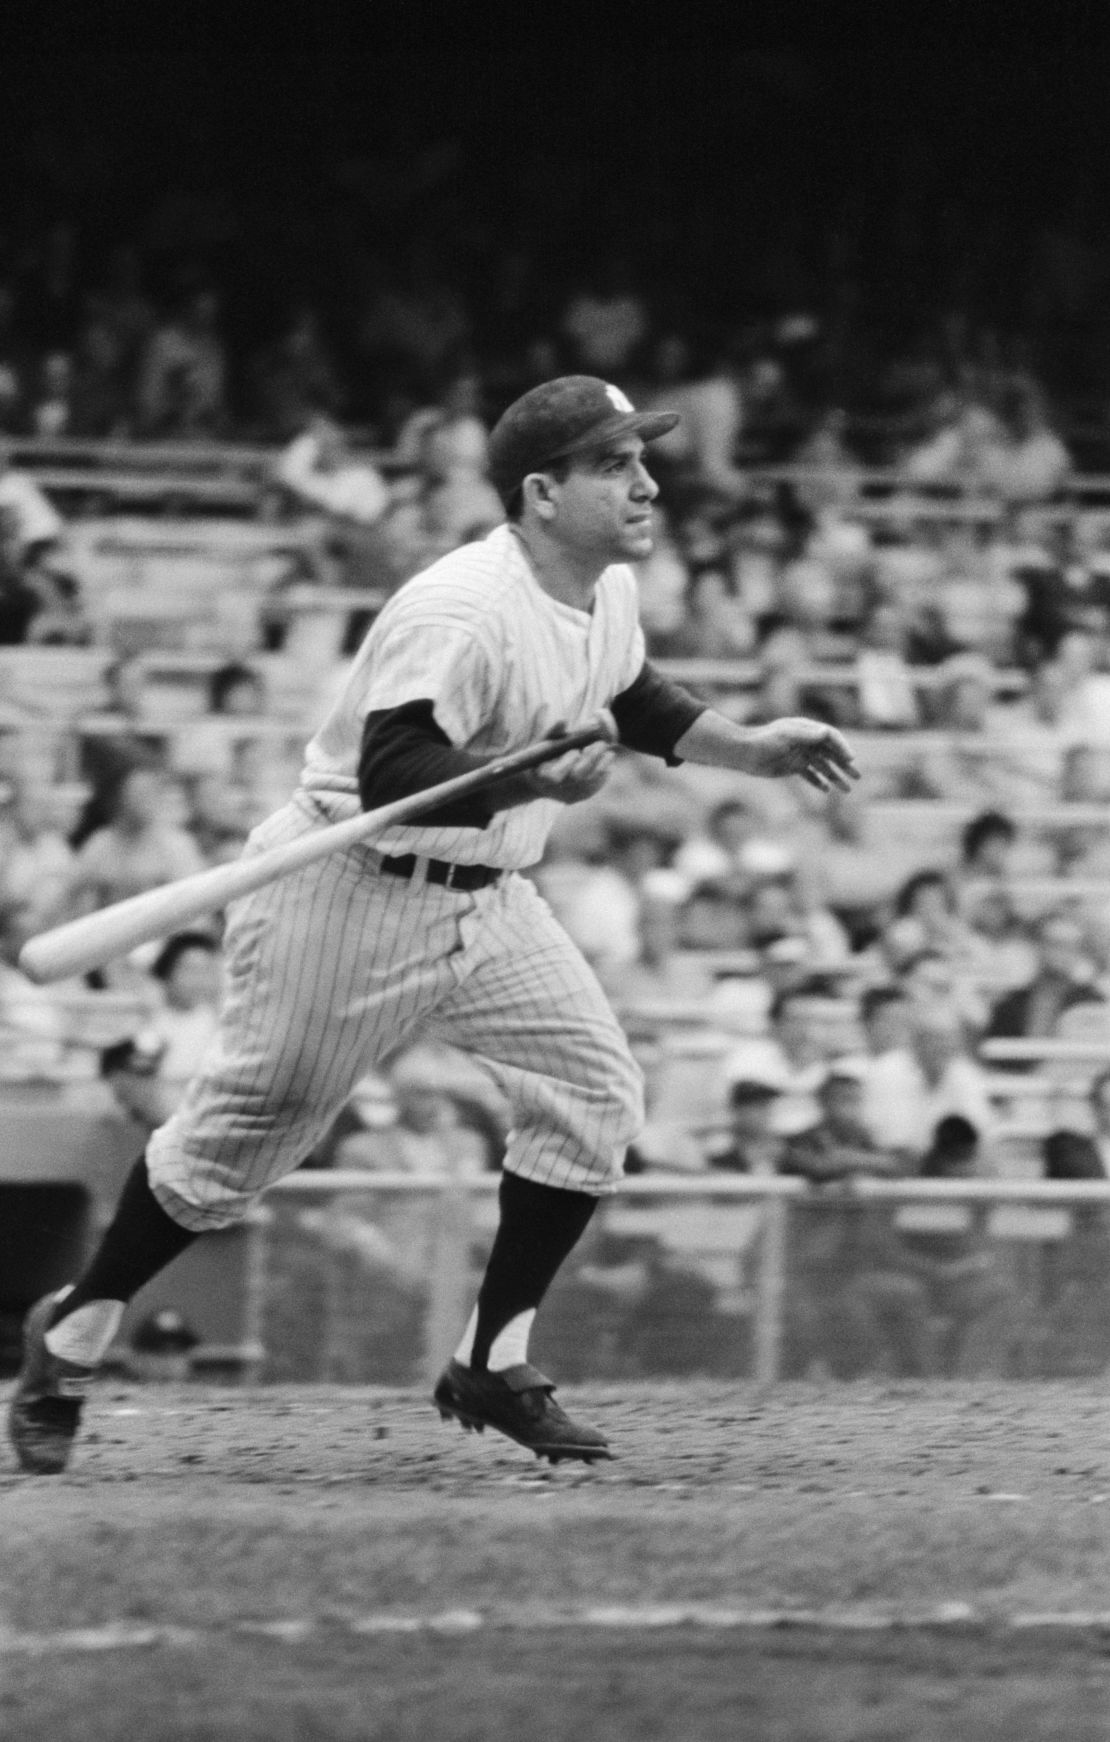 Yogi Berra movie: Family pushed for Yankees icon documentary